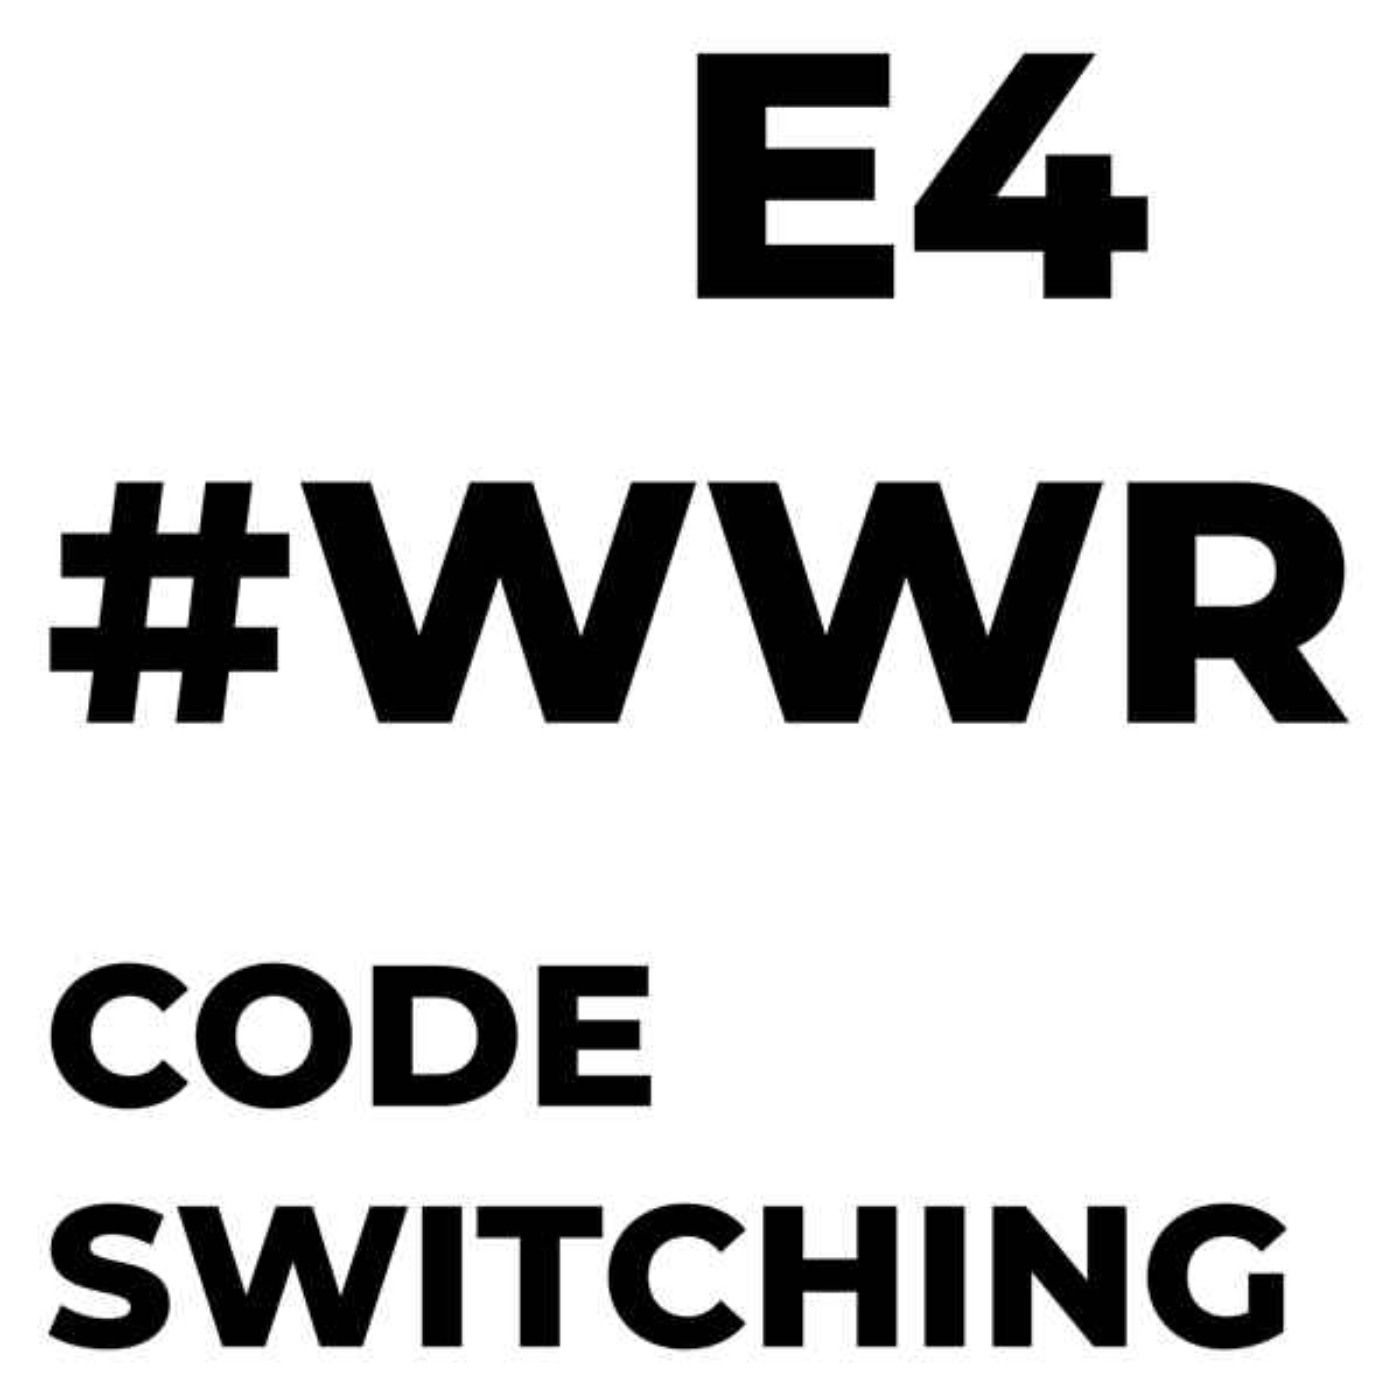 Code Switching